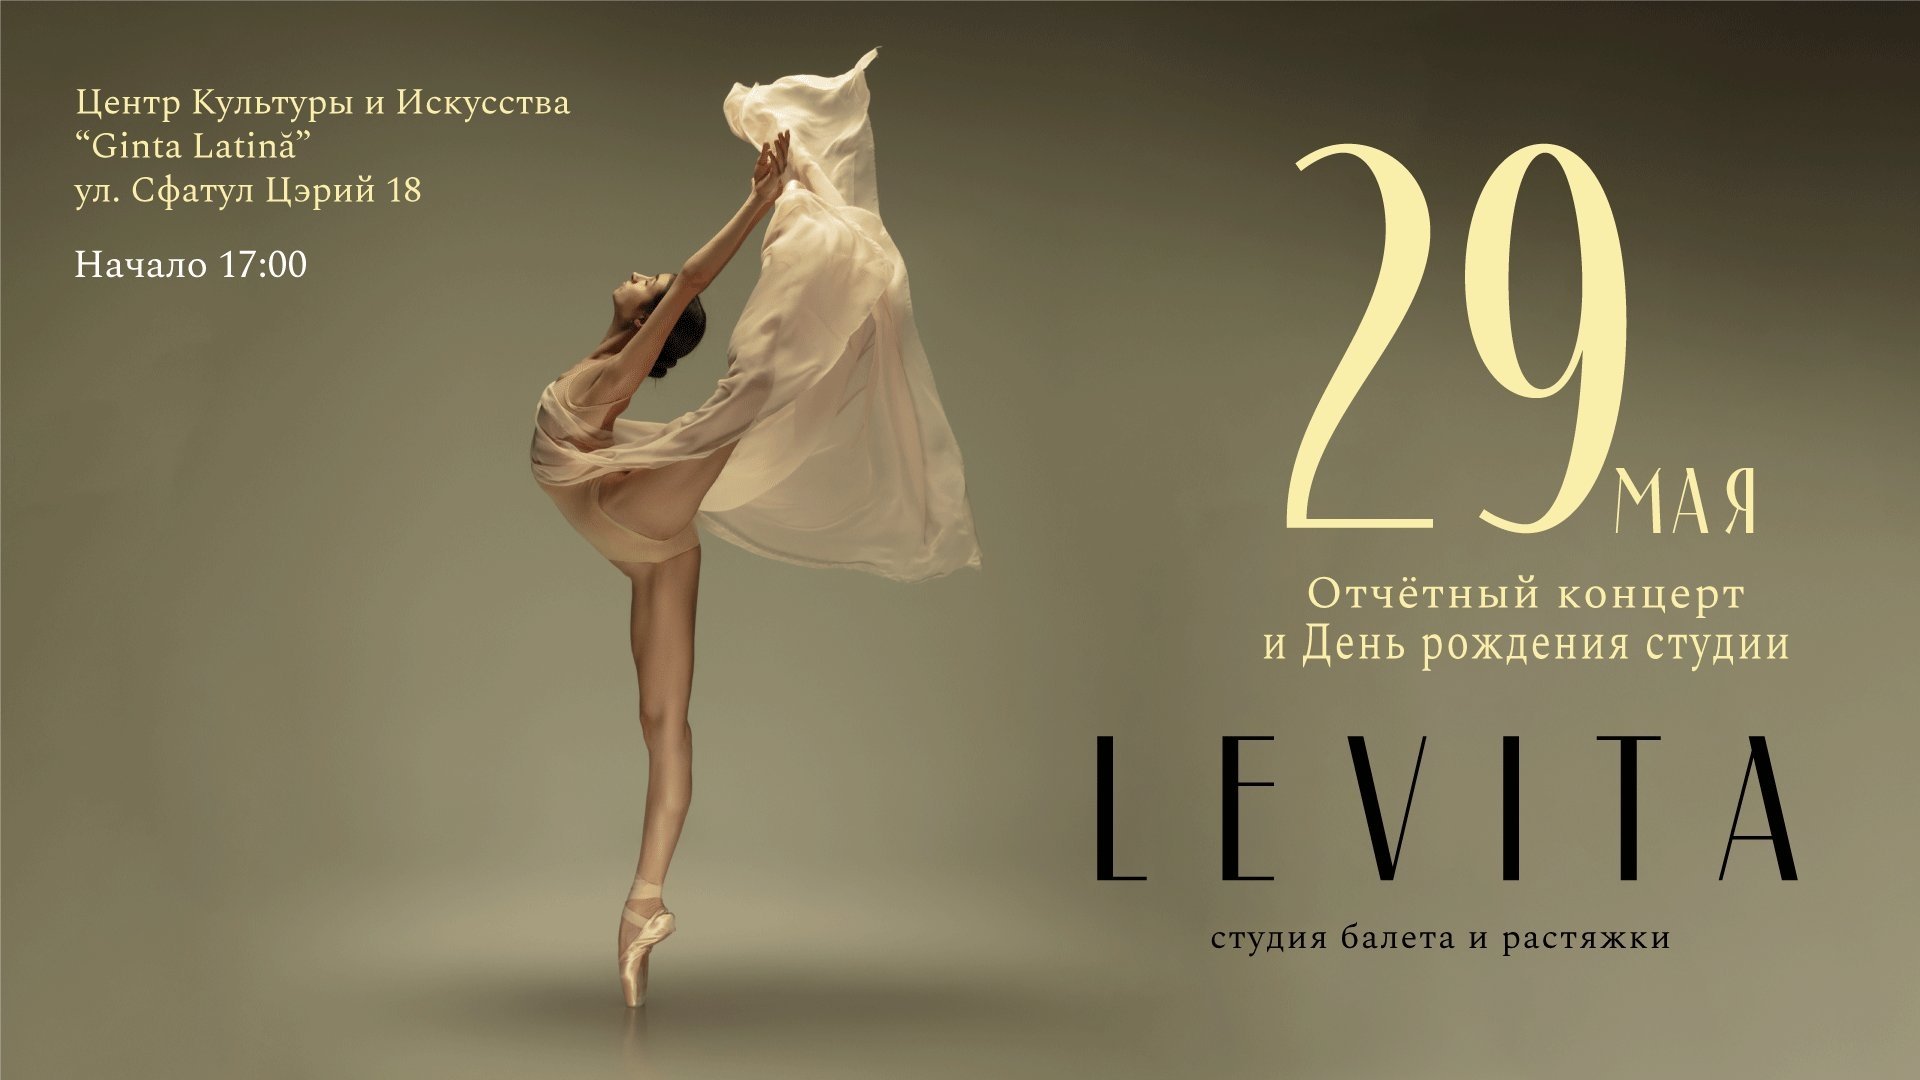 Отчетный концерт и день рождения студии Levita